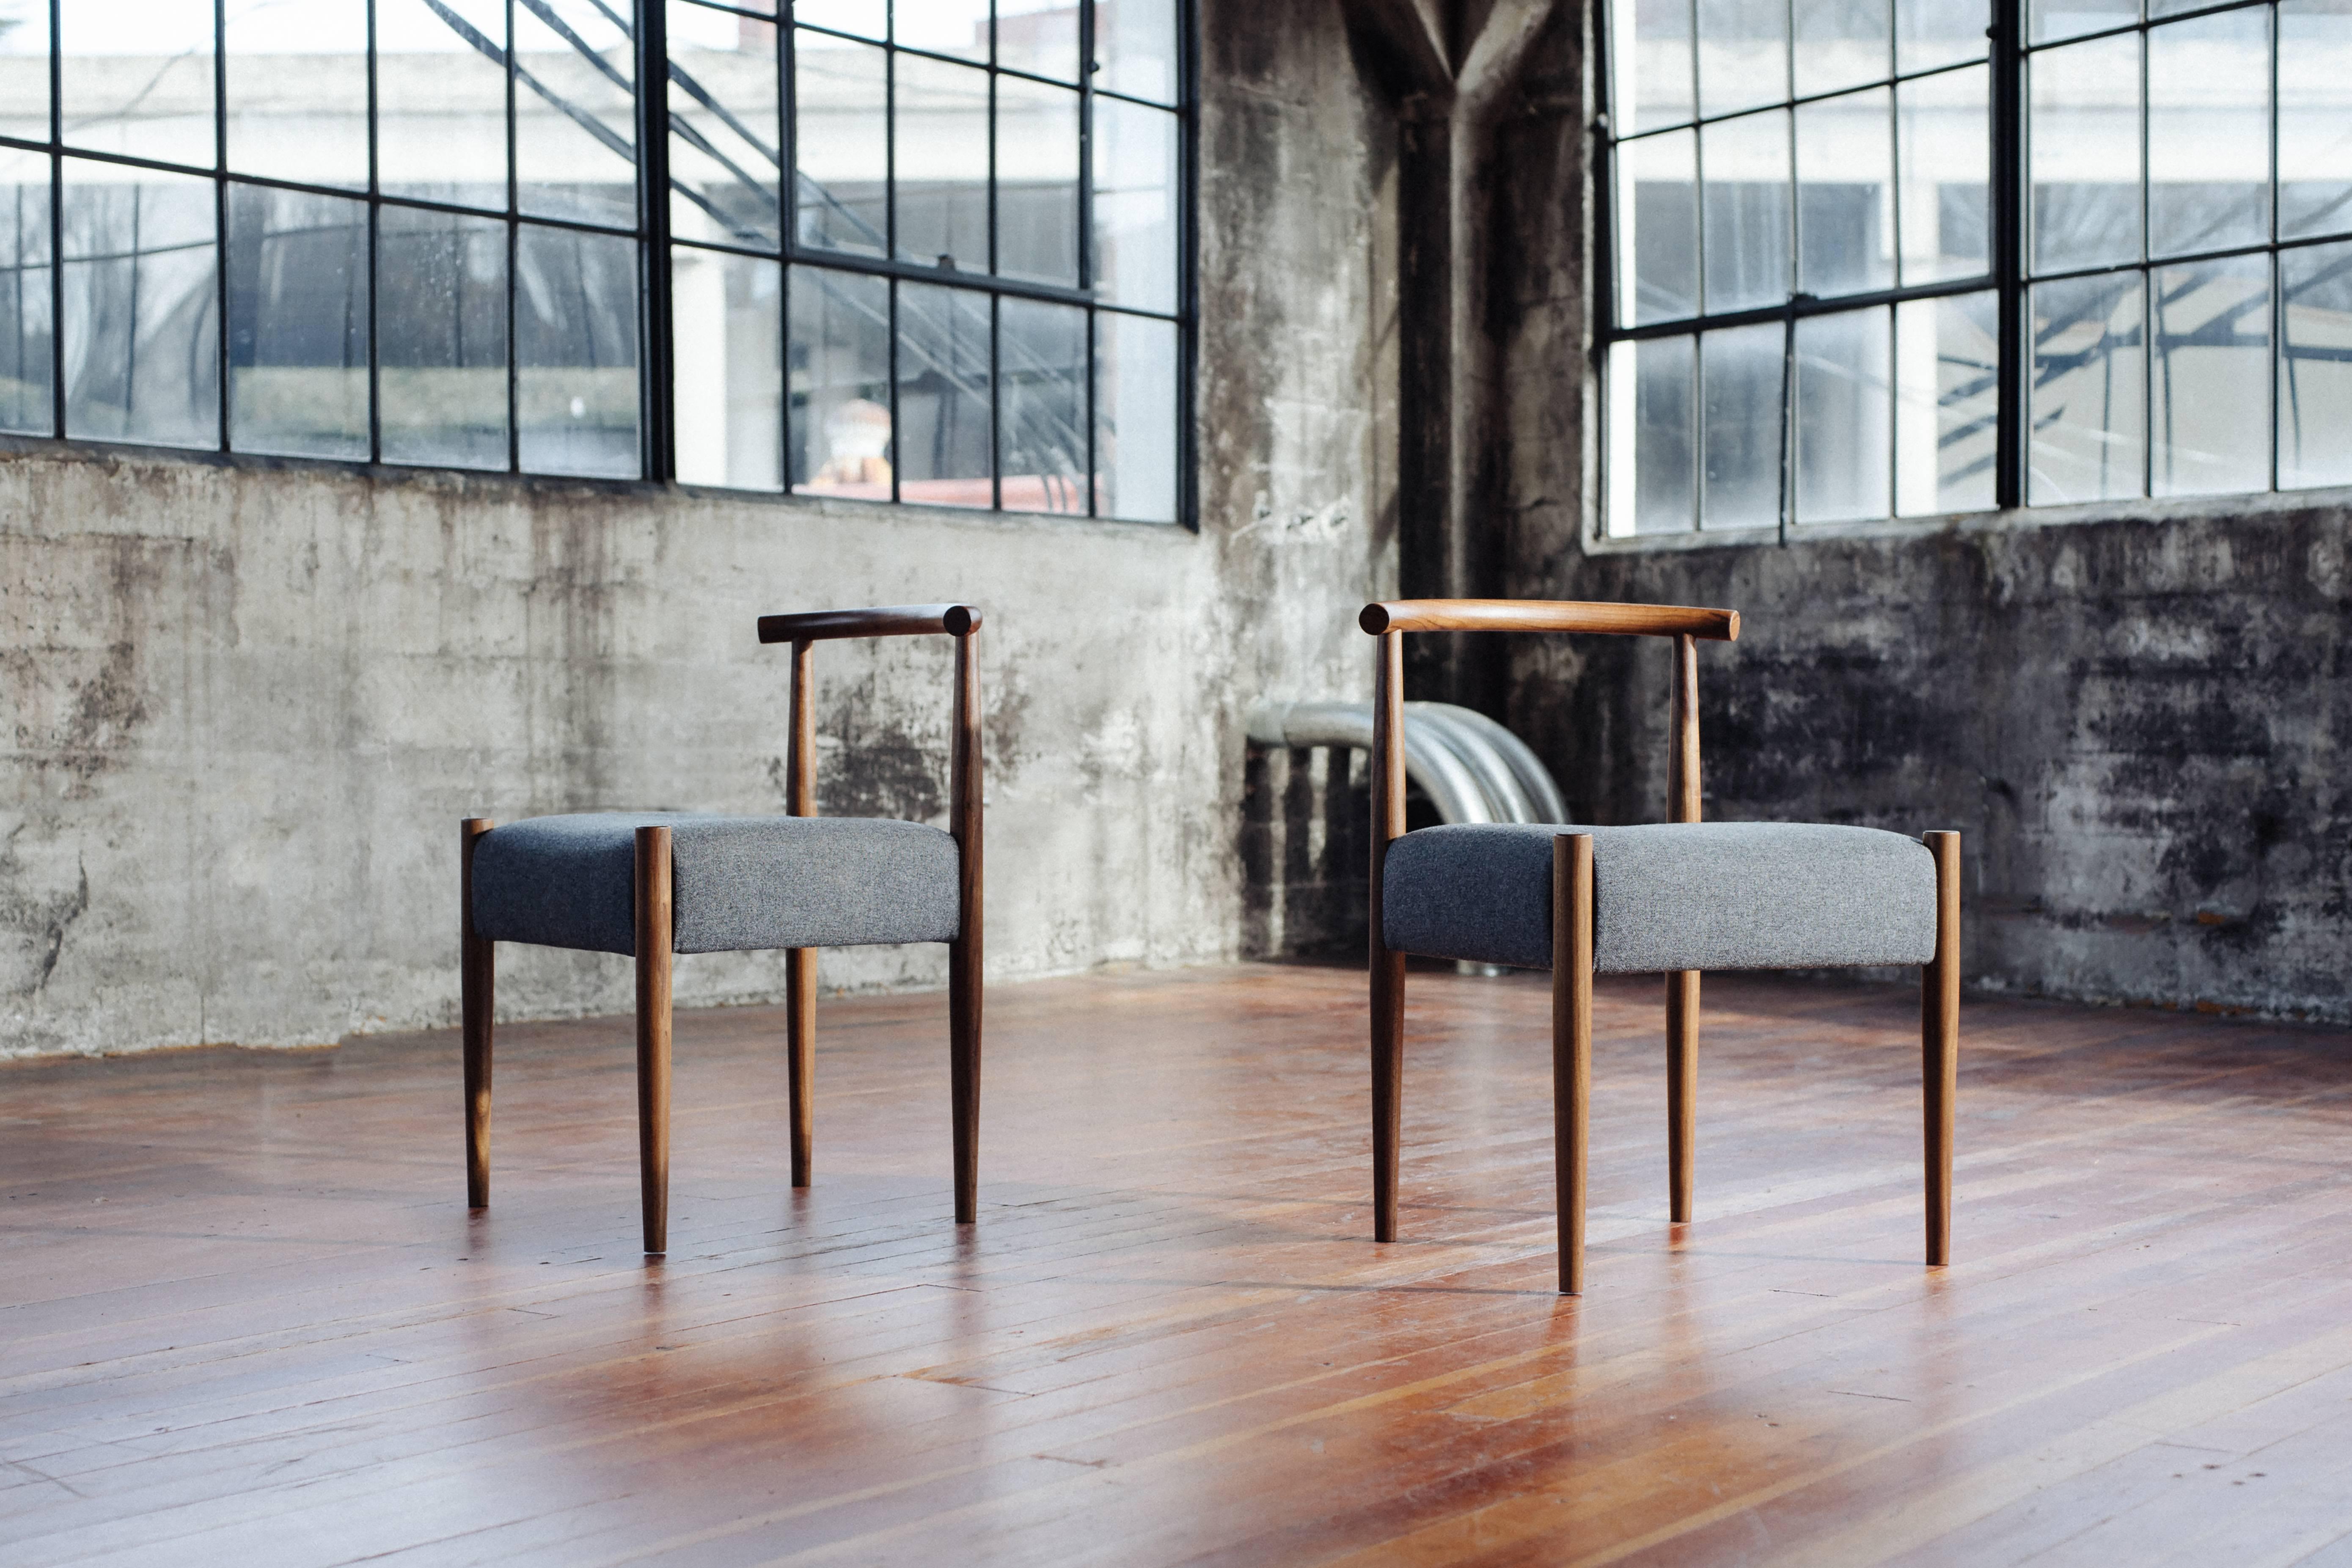 La chaise Harbor de Phloem Studio est une chaise d'appoint moderne et contemporaine en bois massif, fabriquée à la main sur commande, avec des pieds tournés et effilés, un dossier tubulaire façonné à la main dans du bois dur et une assise